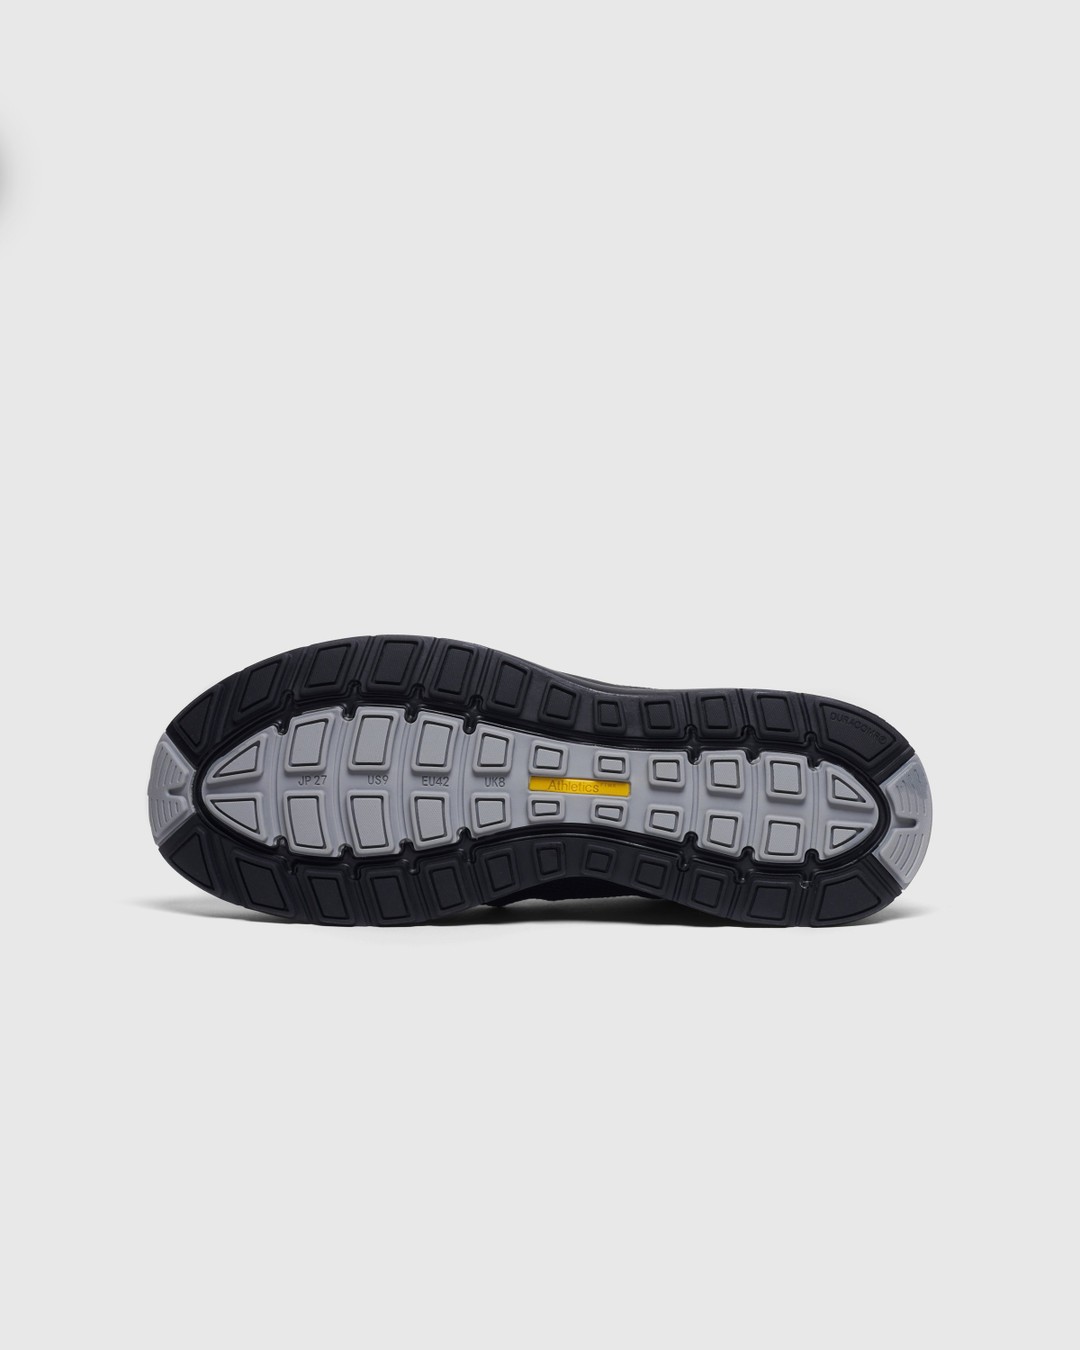 Athletics Footwear – Zero V1 Black | Highsnobiety Shop